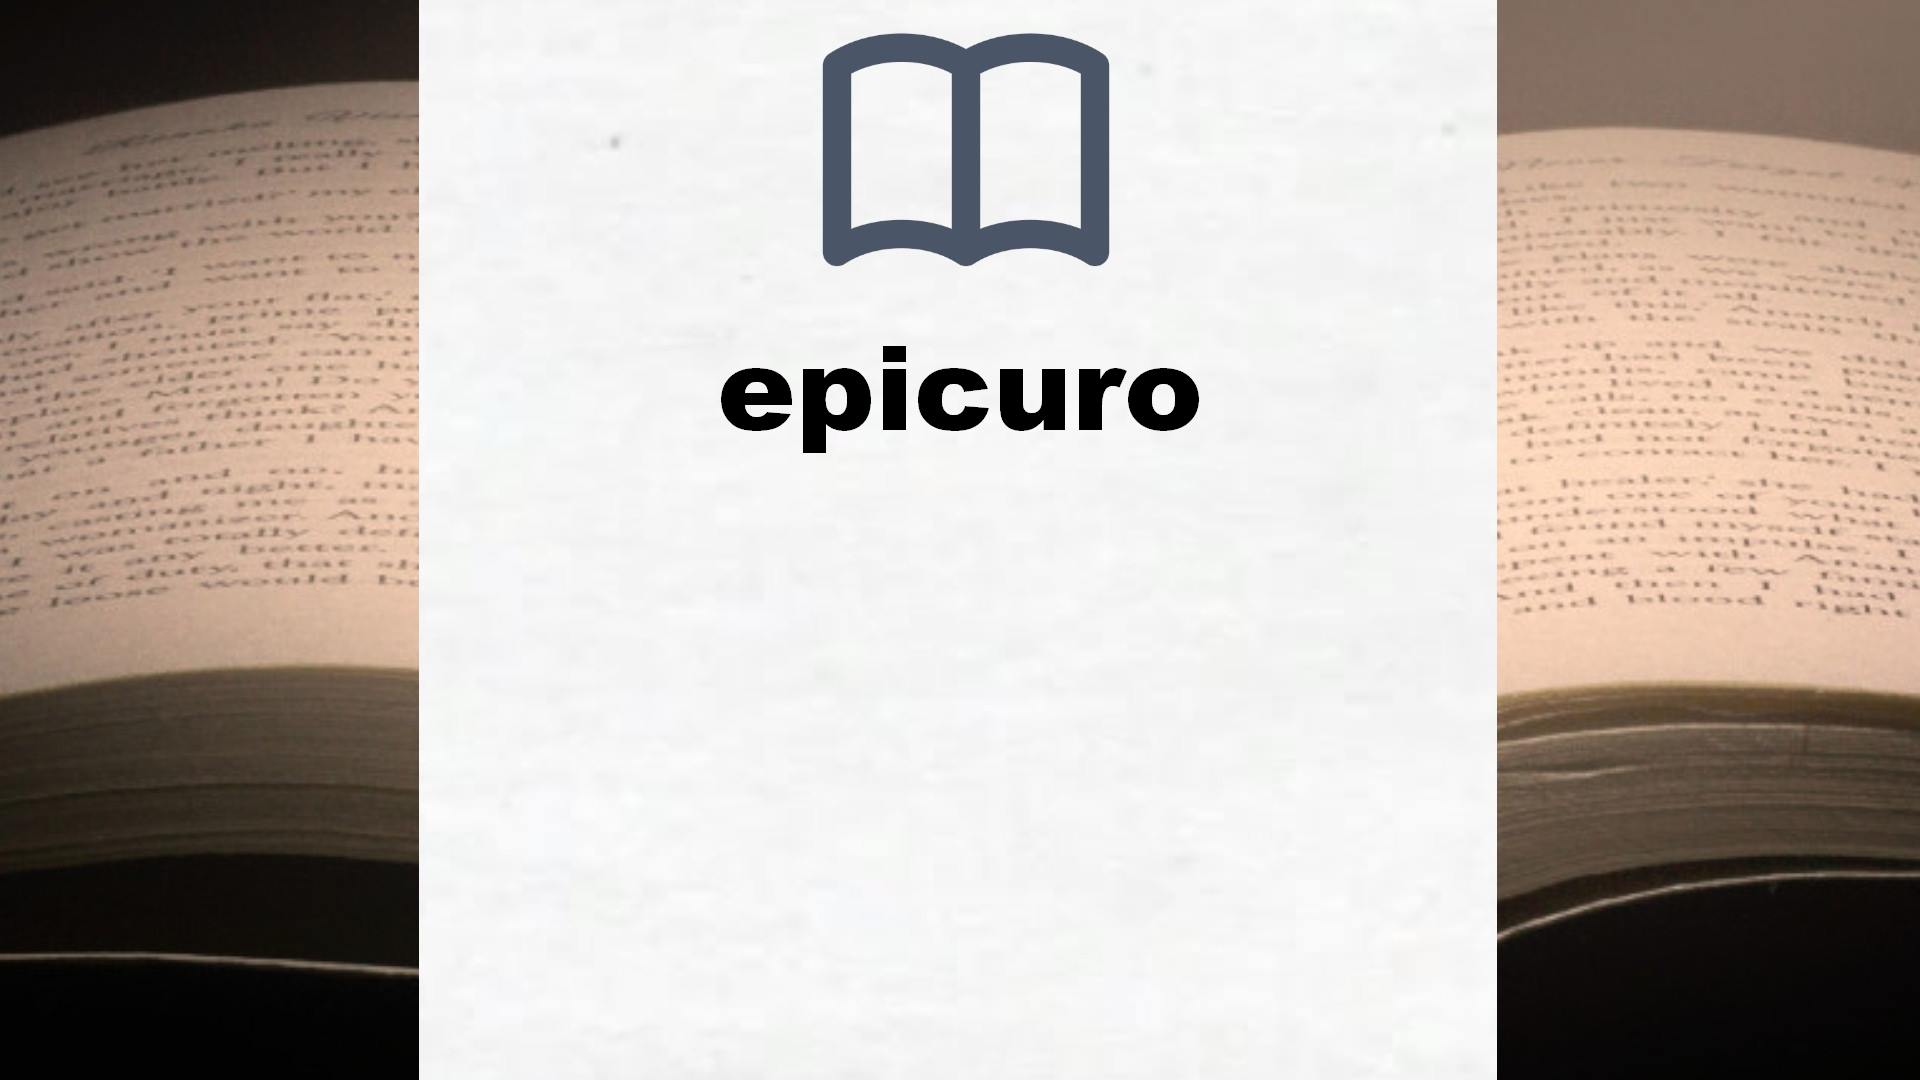 Libros sobre epicuro